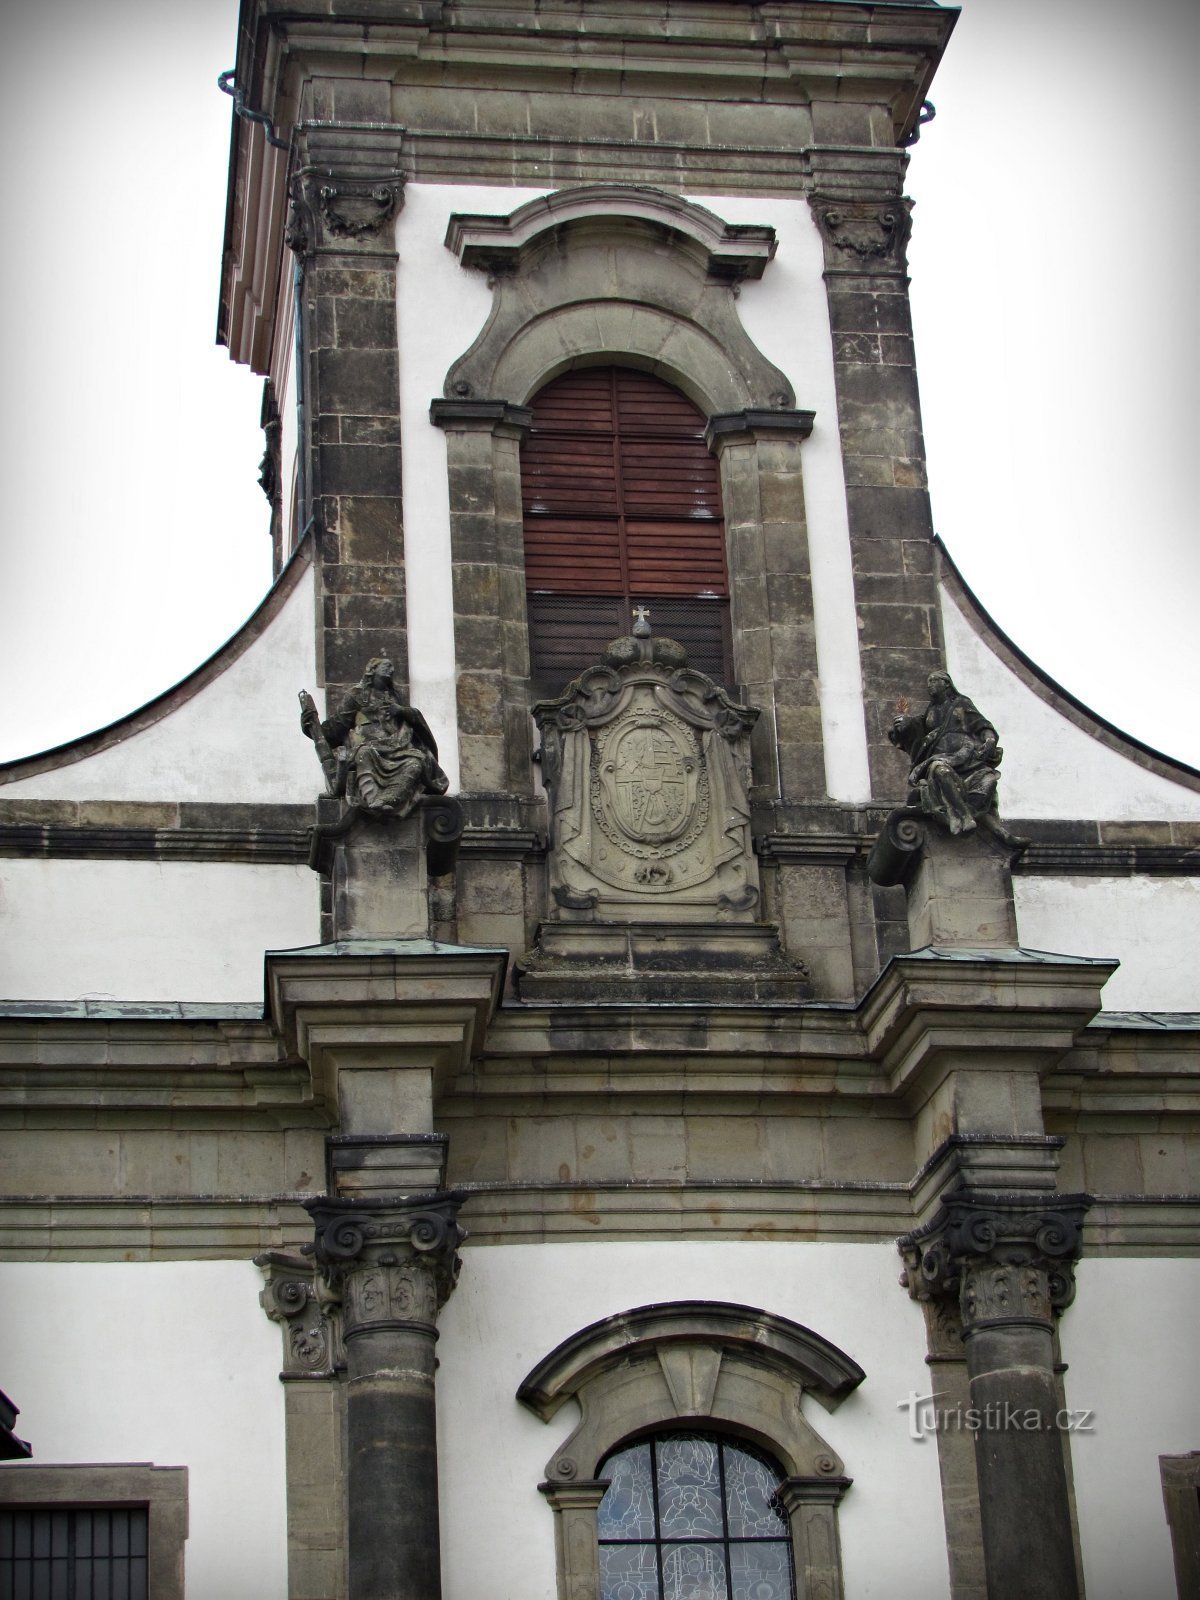 Ústí nad Orlicí - den vigtigste hellige bygning